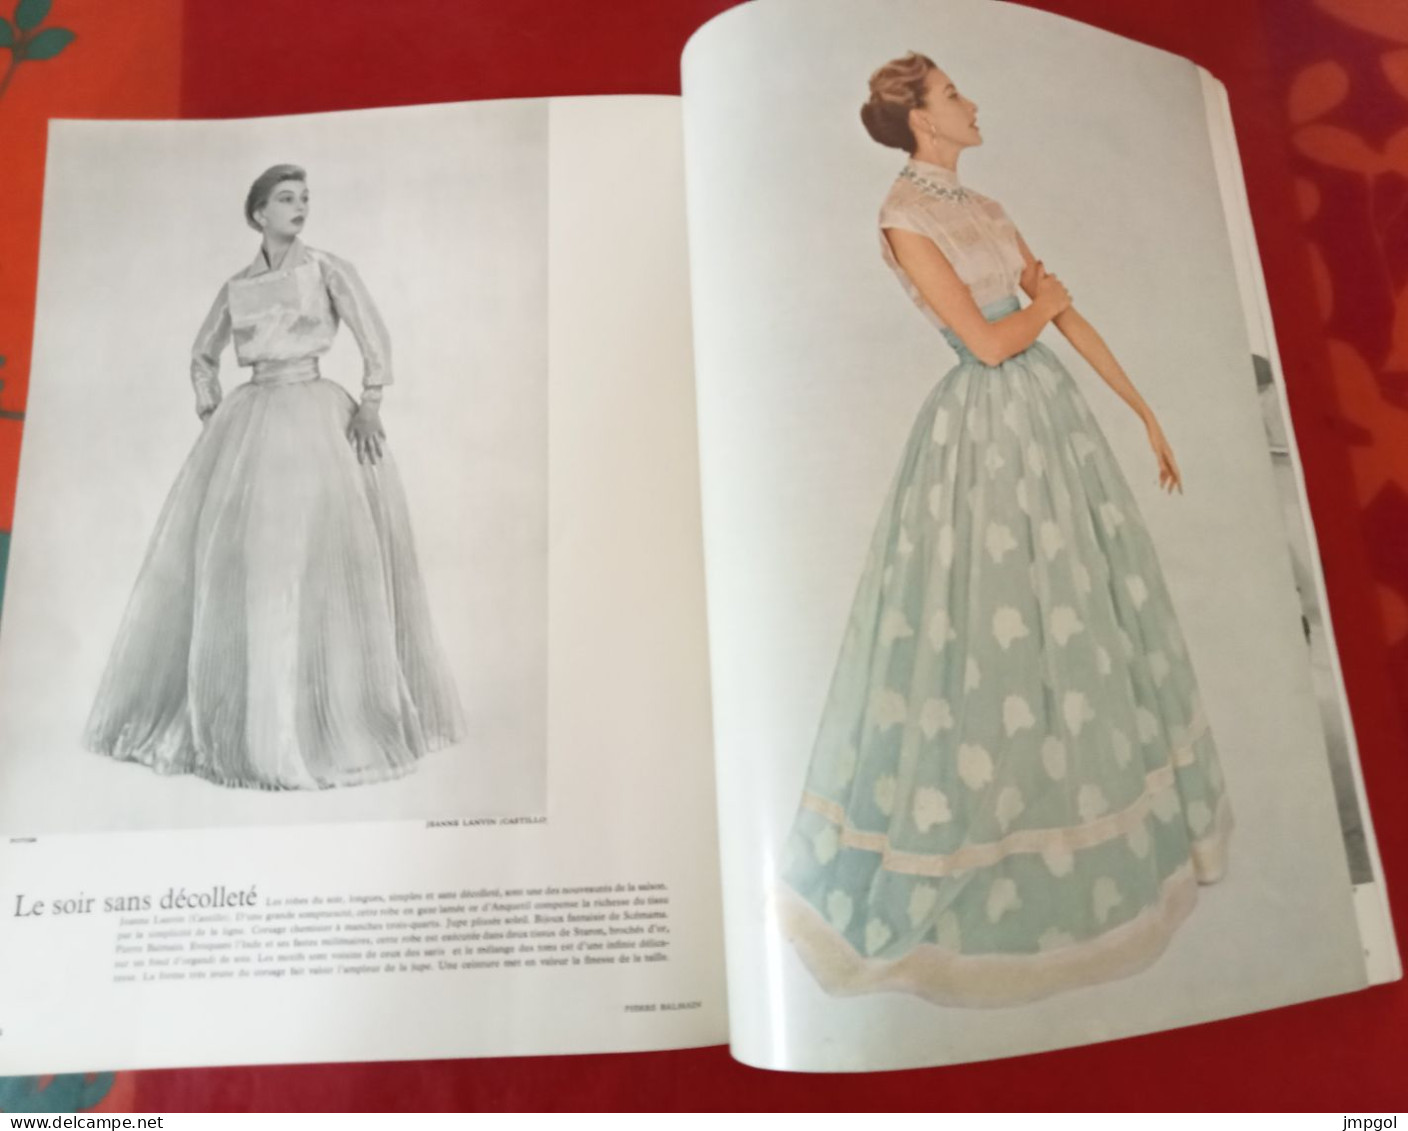 Officiel de la Mode et de la Couture Paris Septembre 1954 Collections Automne Hiver Dior Lanvin Patou Fath Balenciaga